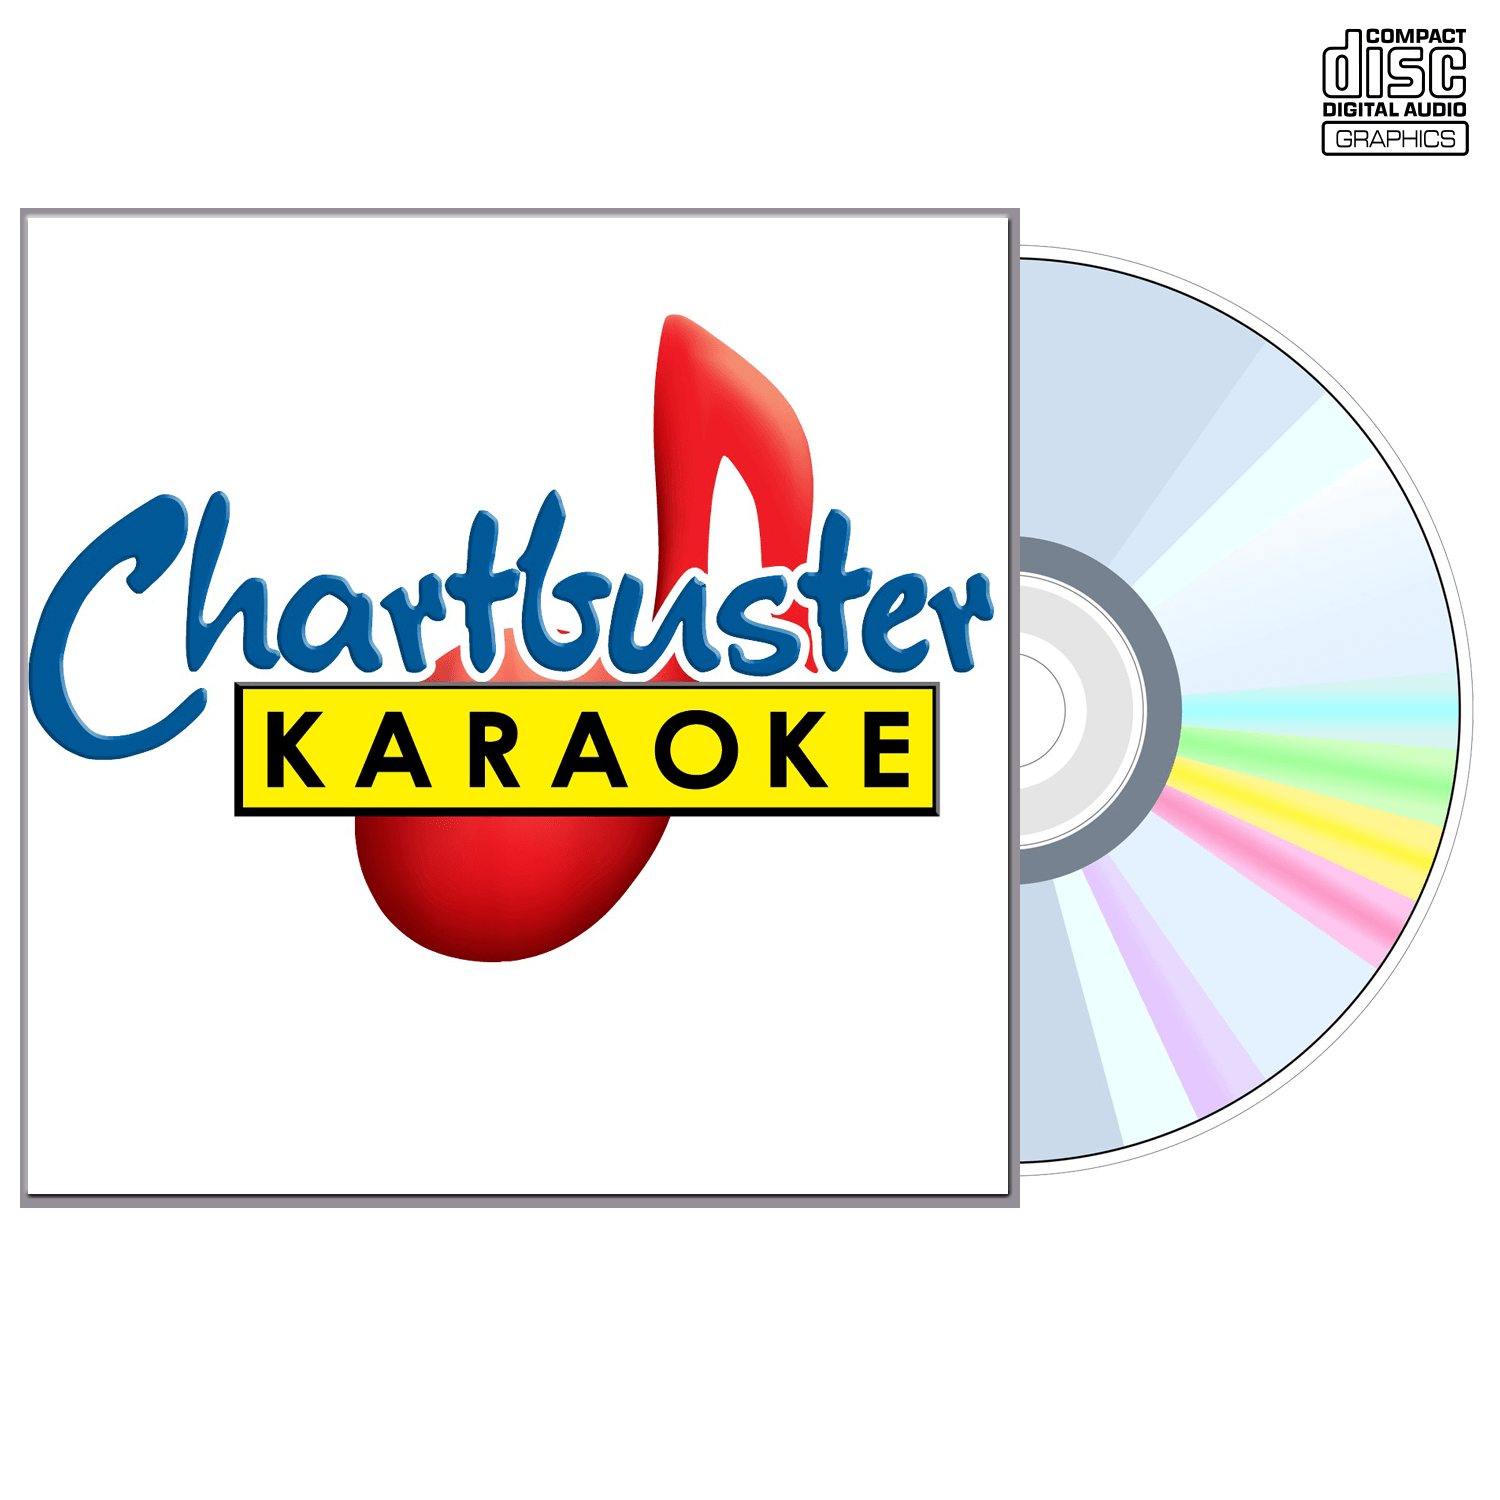 Hank Thompson - CD+G - Chartbuster Karaoke - Karaoke Home Entertainment